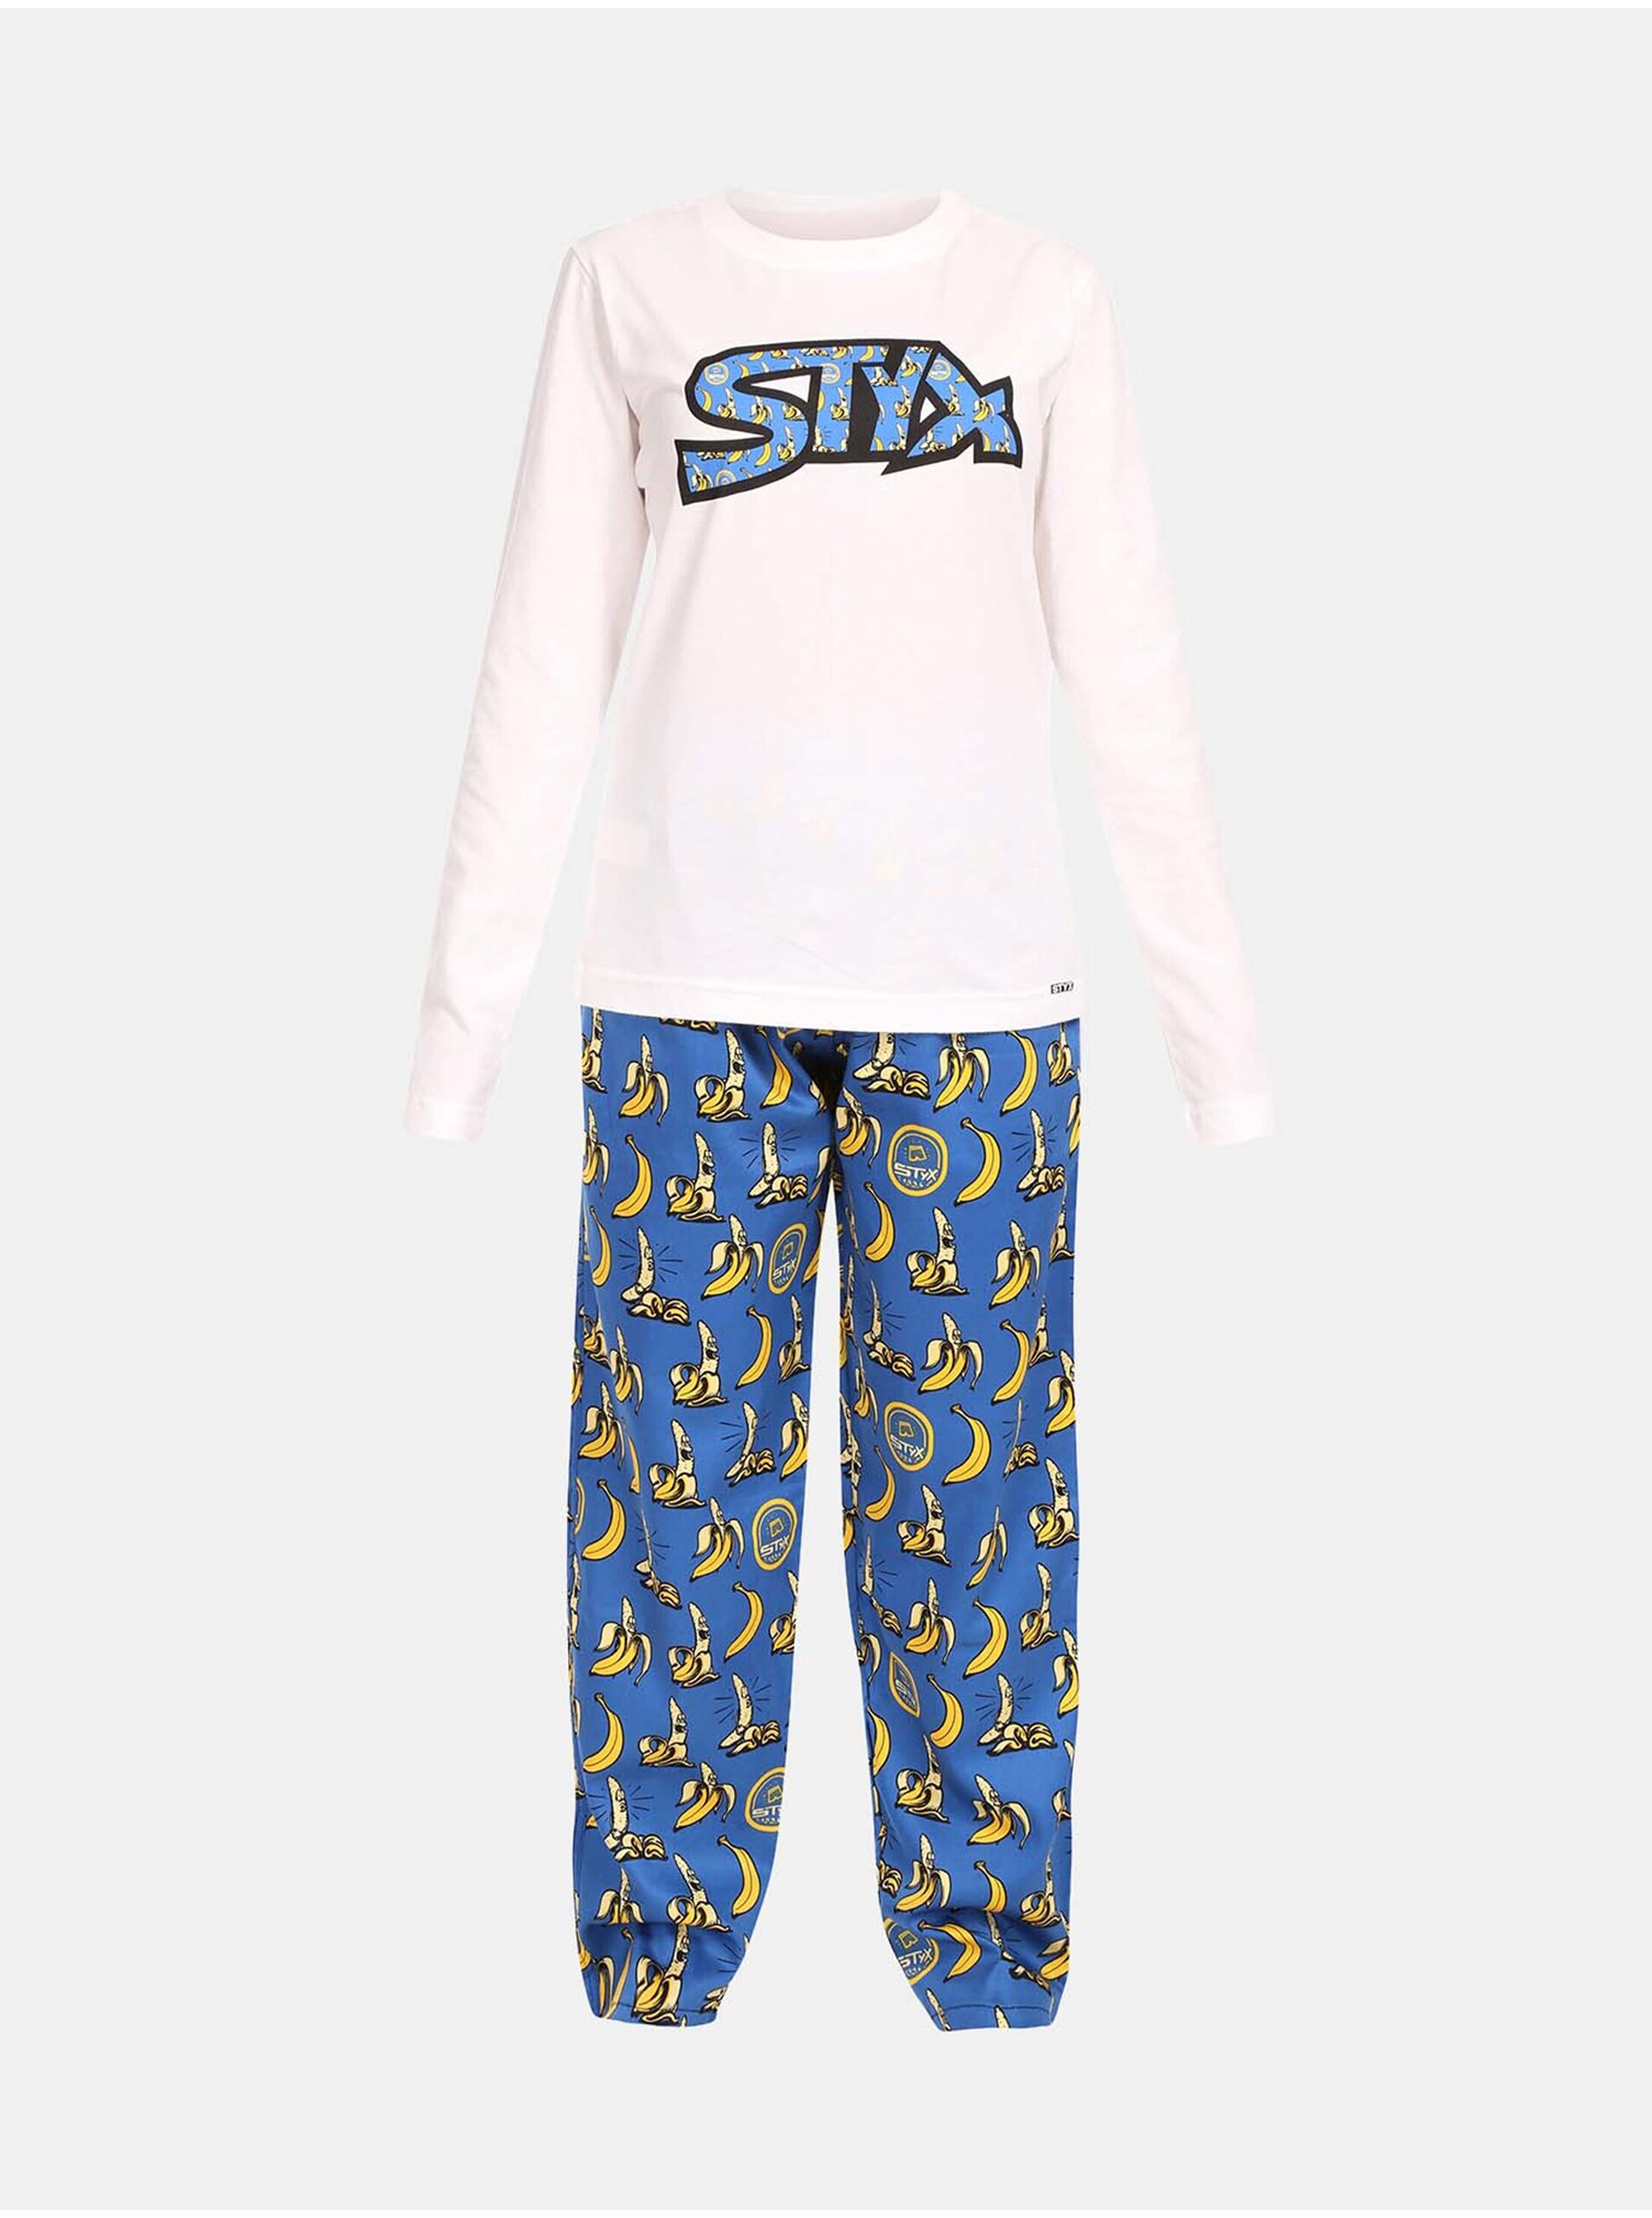 E-shop Modro-biele dámske pyžamo Styx Banány